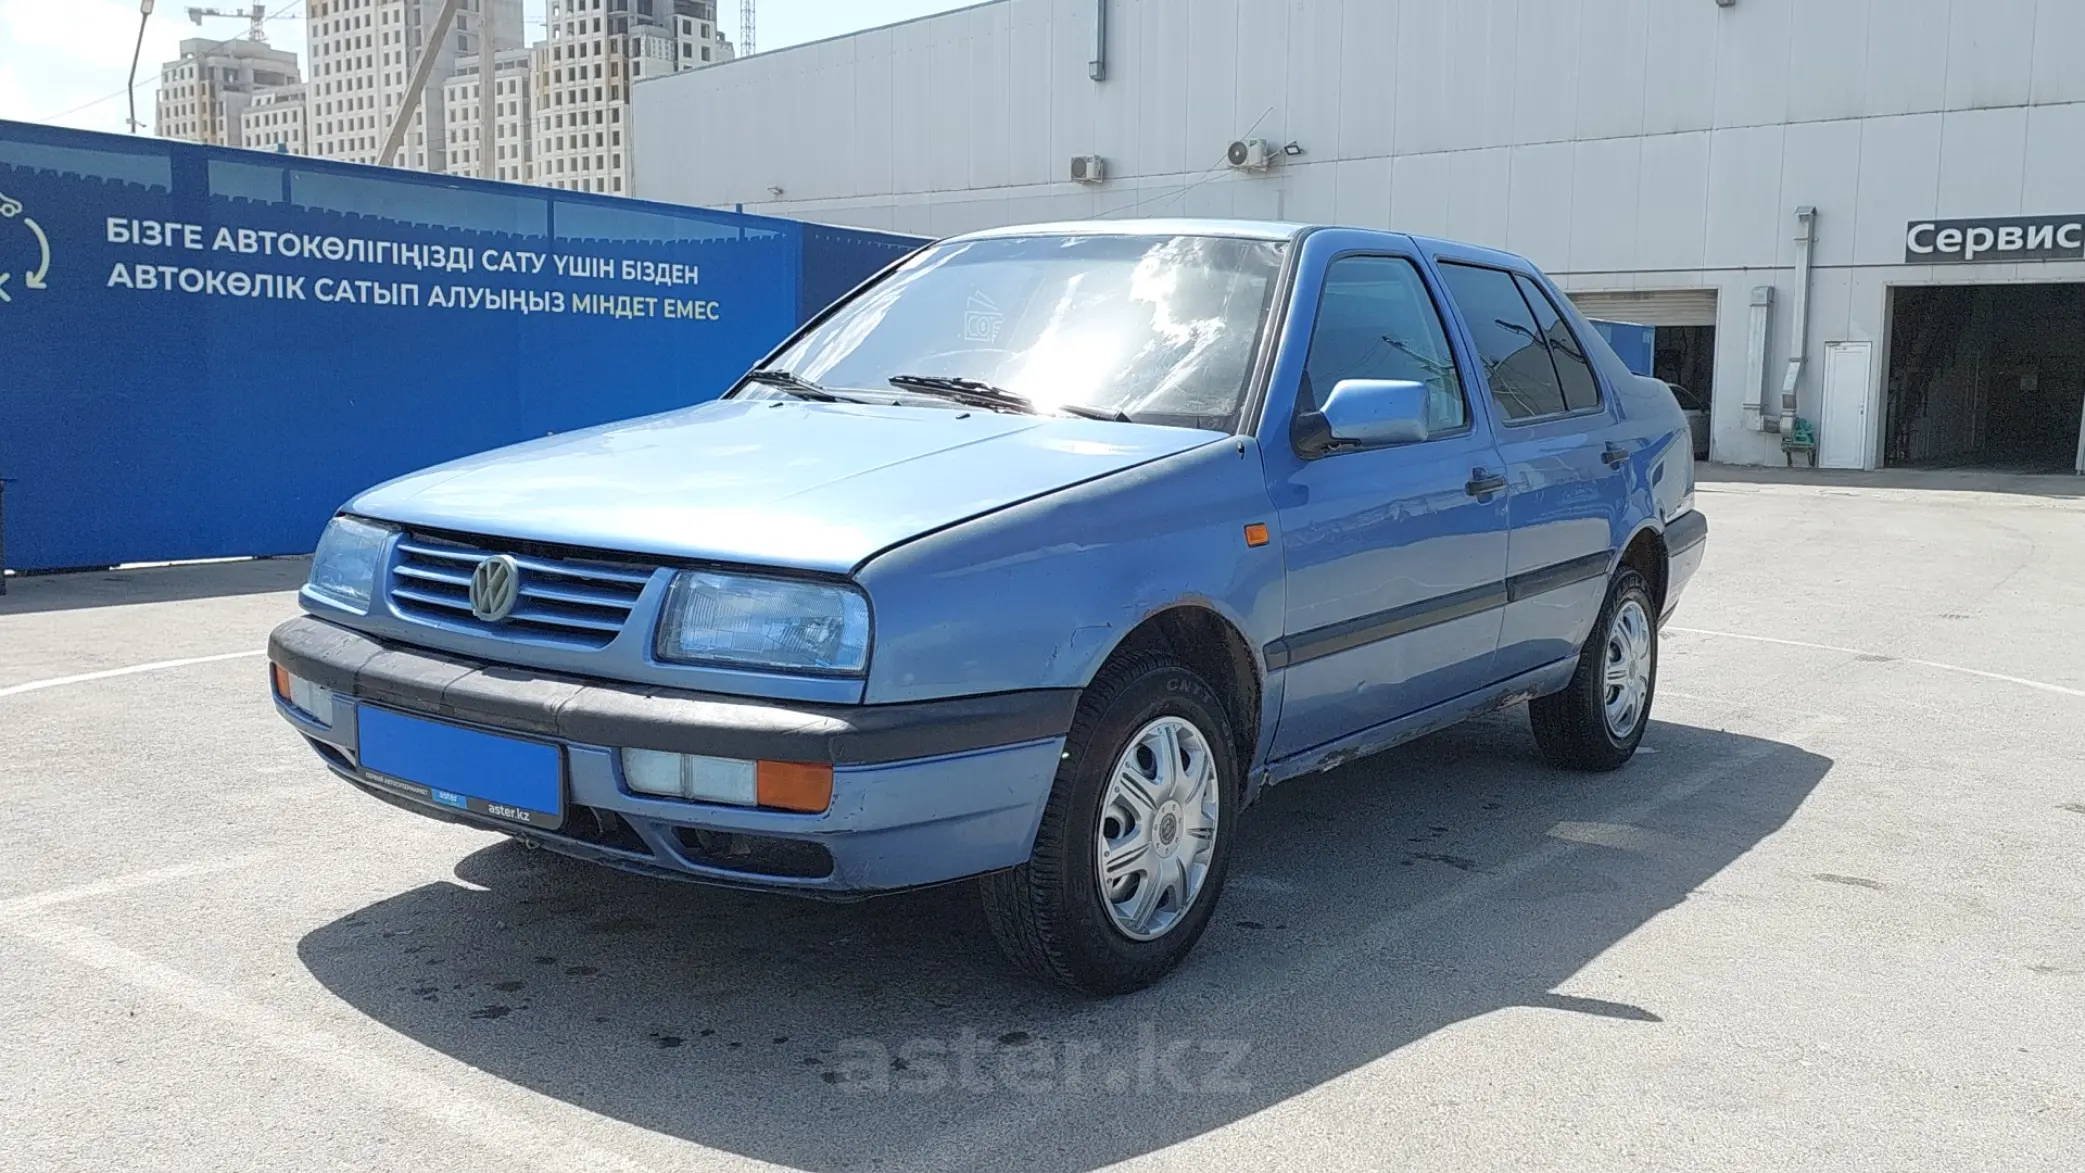 Локальный ремонт Volkswagen Vento в автосервисе в Москве, цены | АвтоСпецЦентр